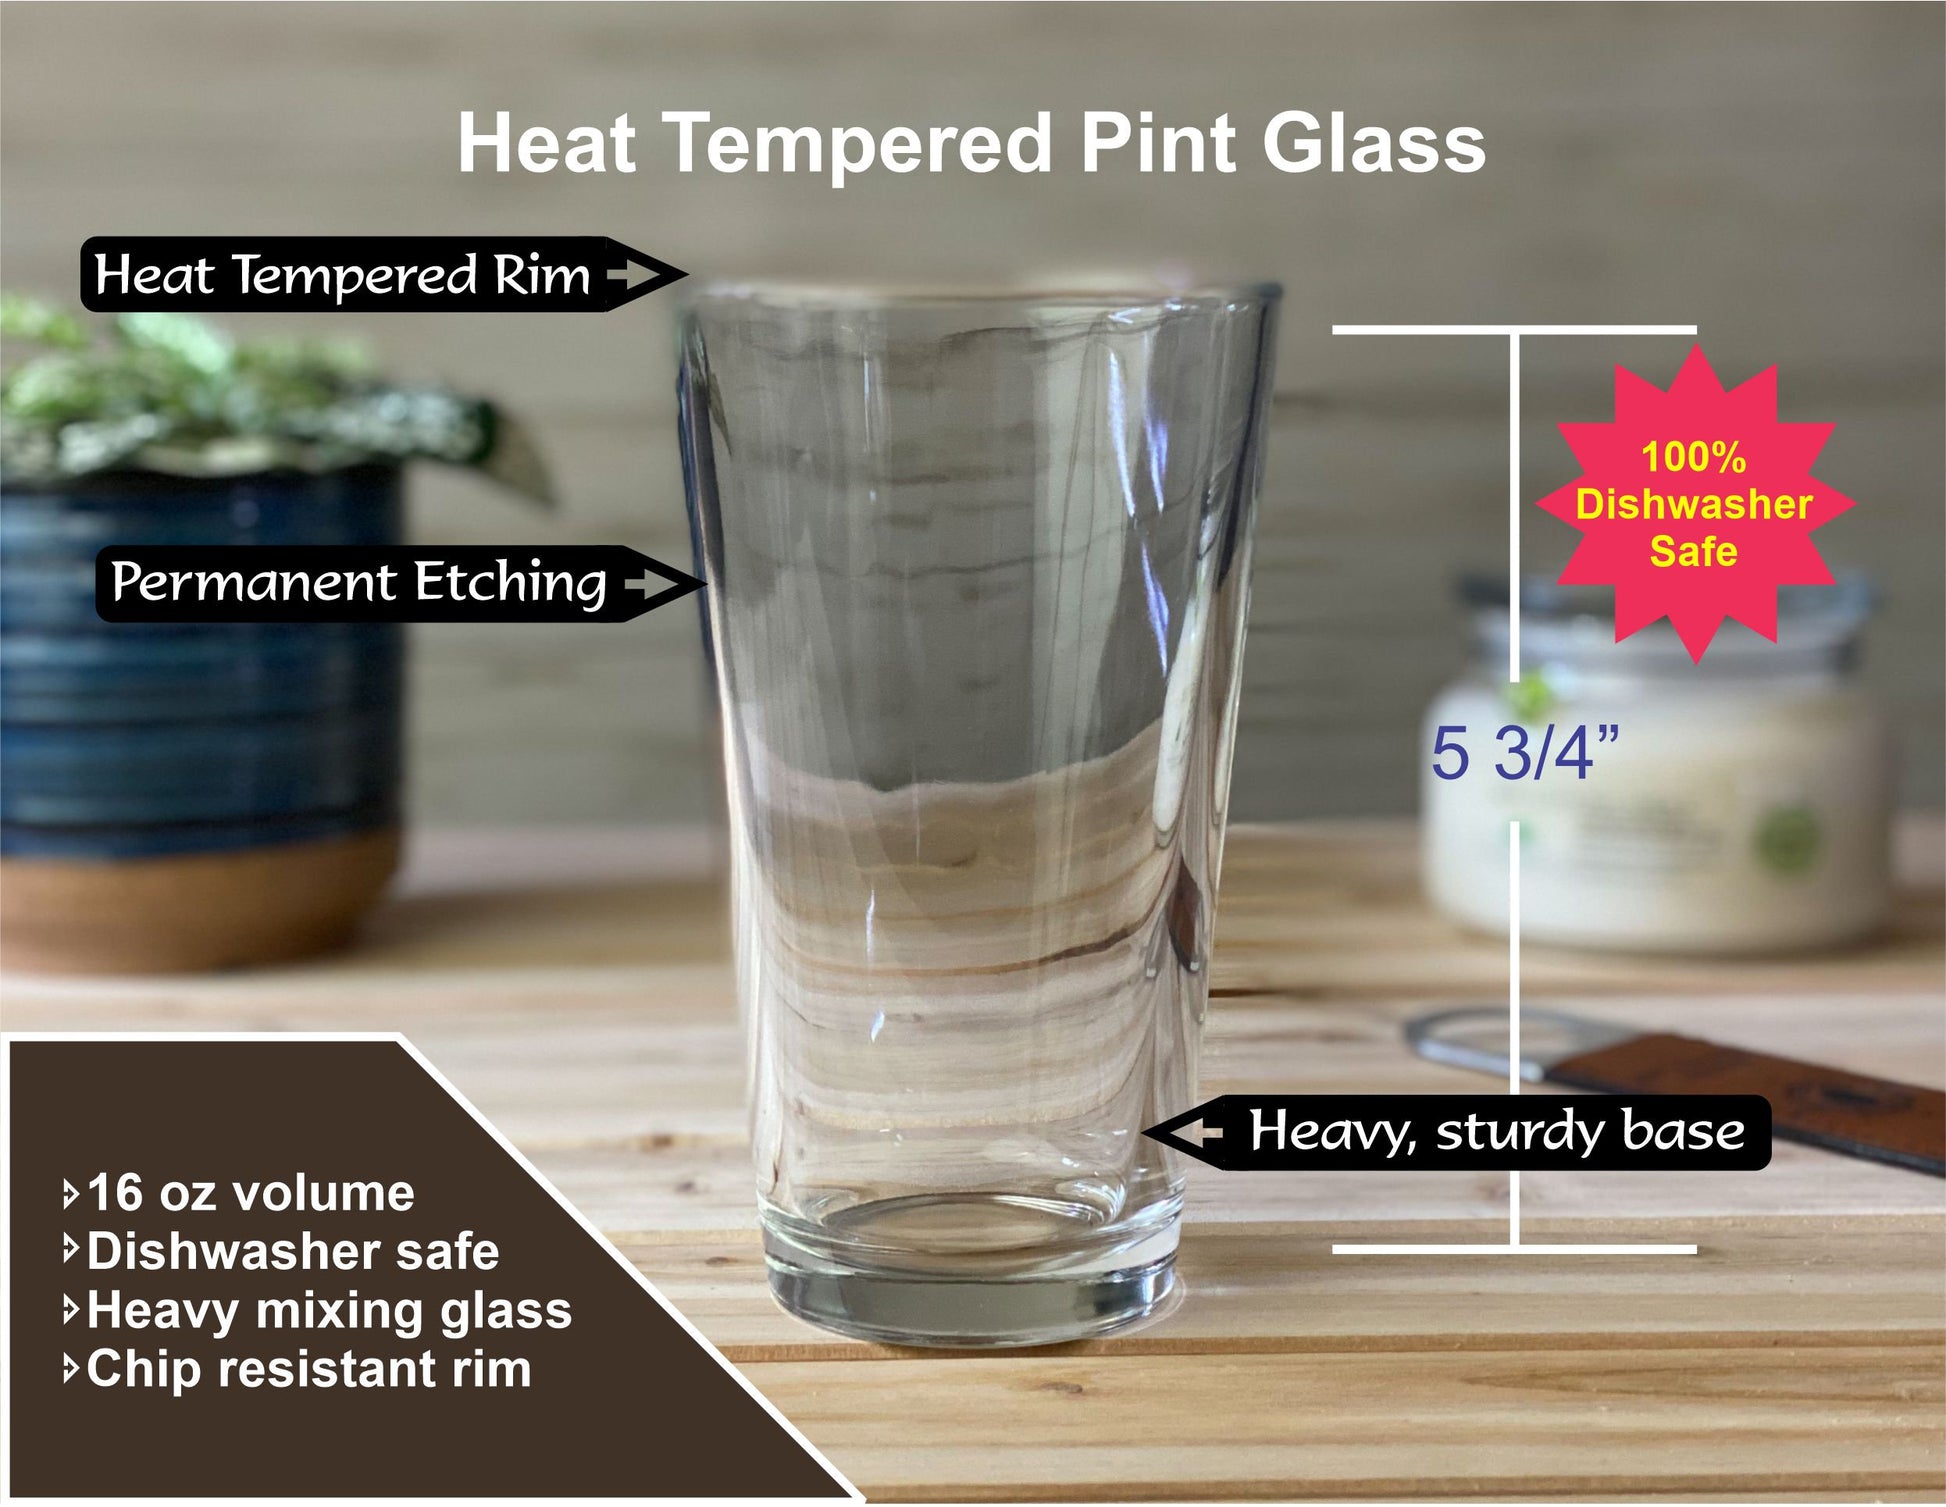 Lake Martin Alabama Pint Glass - Laser engraved pint glass